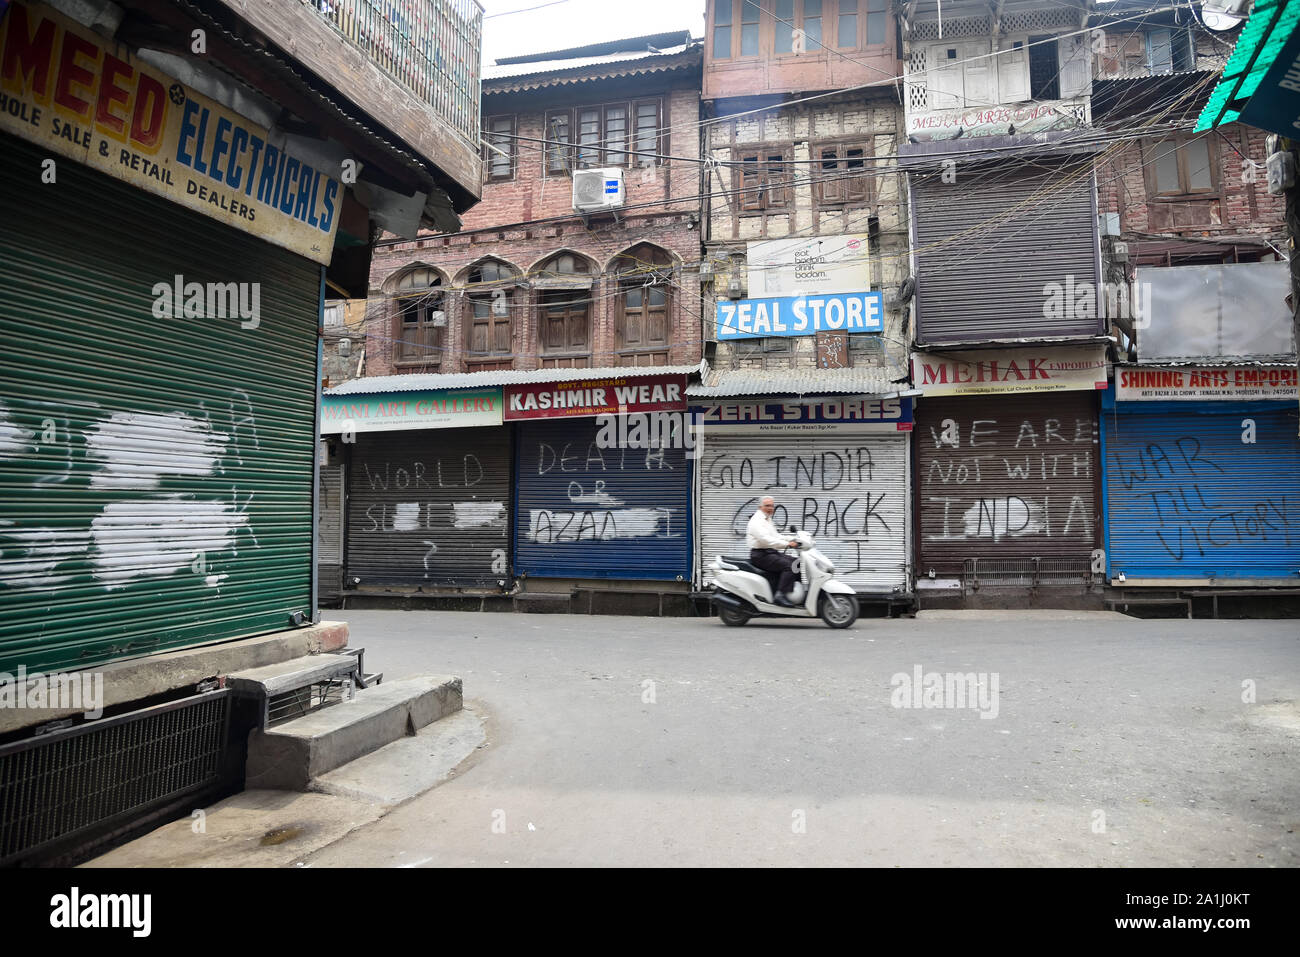 Un motociclista passa di negozi chiusi durante le restrizioni in Srinagar.Dopo la revoca dell'articolo 370 che conferisce lo status speciale di Jammu e Kashmir, le autorità statali hanno imposto restrizioni in Kashmir per prevenire le proteste. Foto Stock